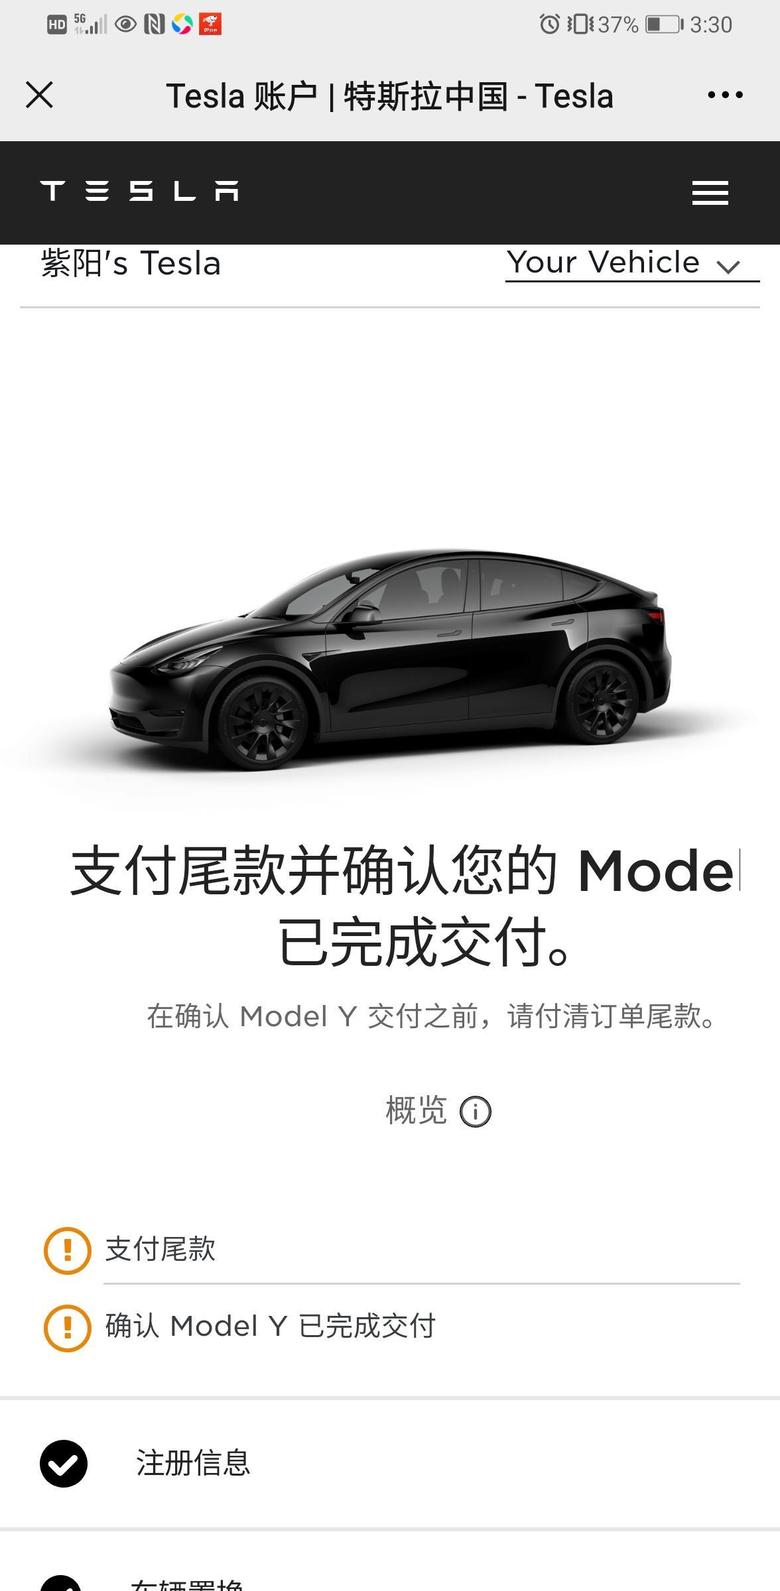 model y 坐标郑州、1月3号下单modelY、车已经到店了，通知去提车，今天去看了看实车、觉得是不是没有model3好看啊？各位有什么意见？